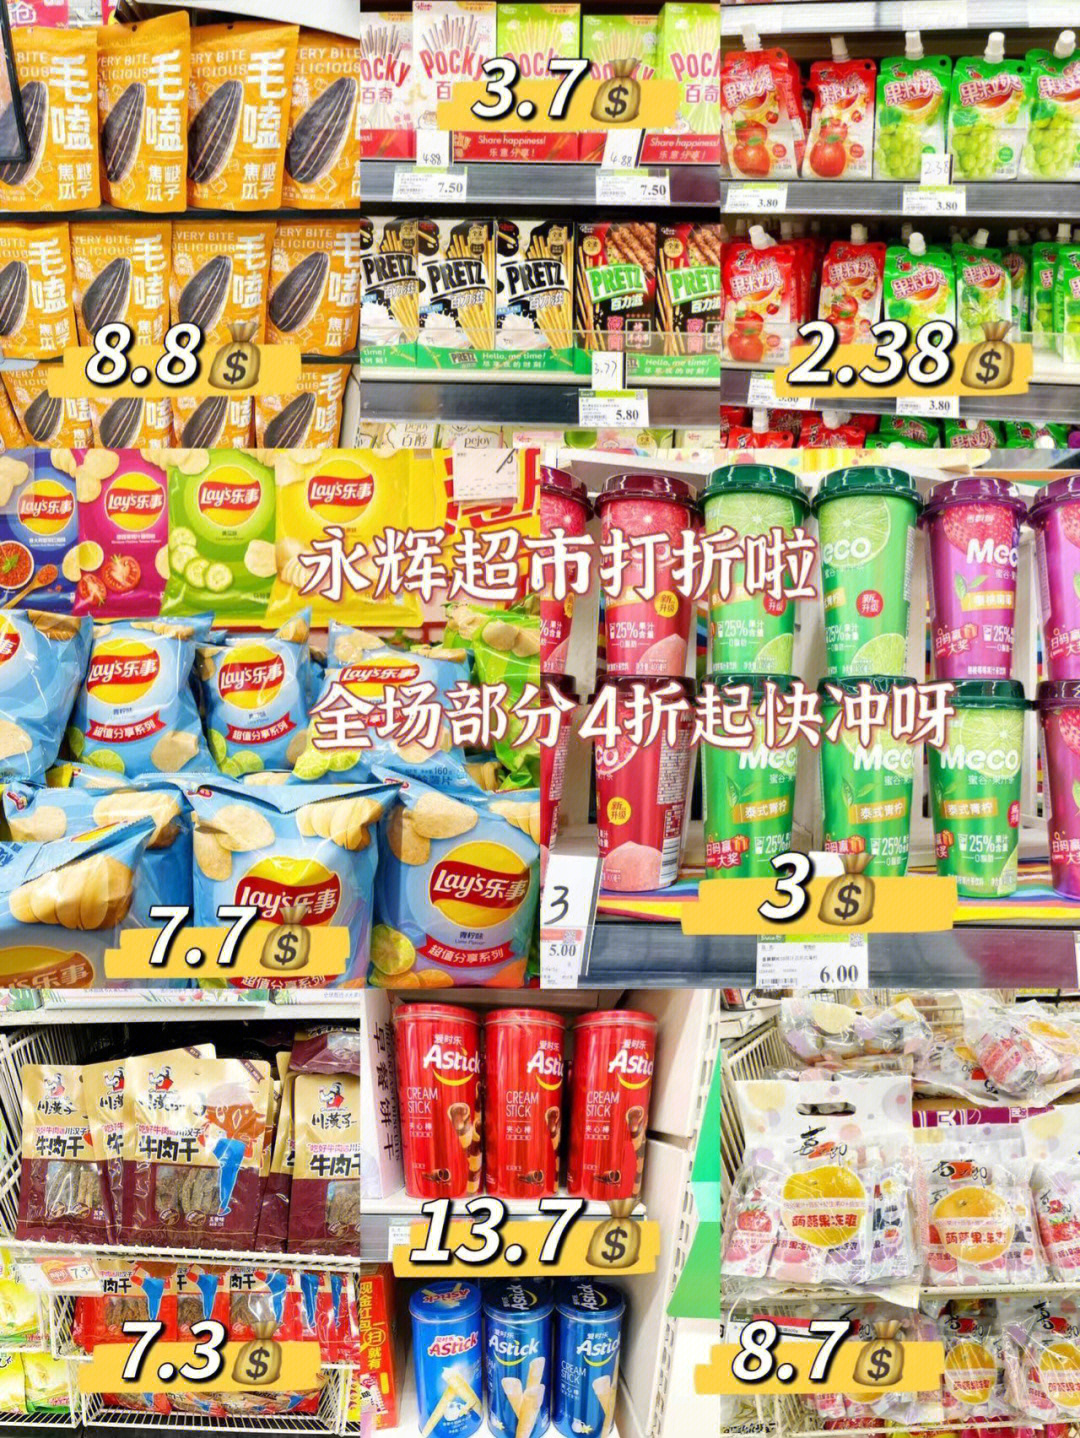 重庆探店永辉超市打折了耶70